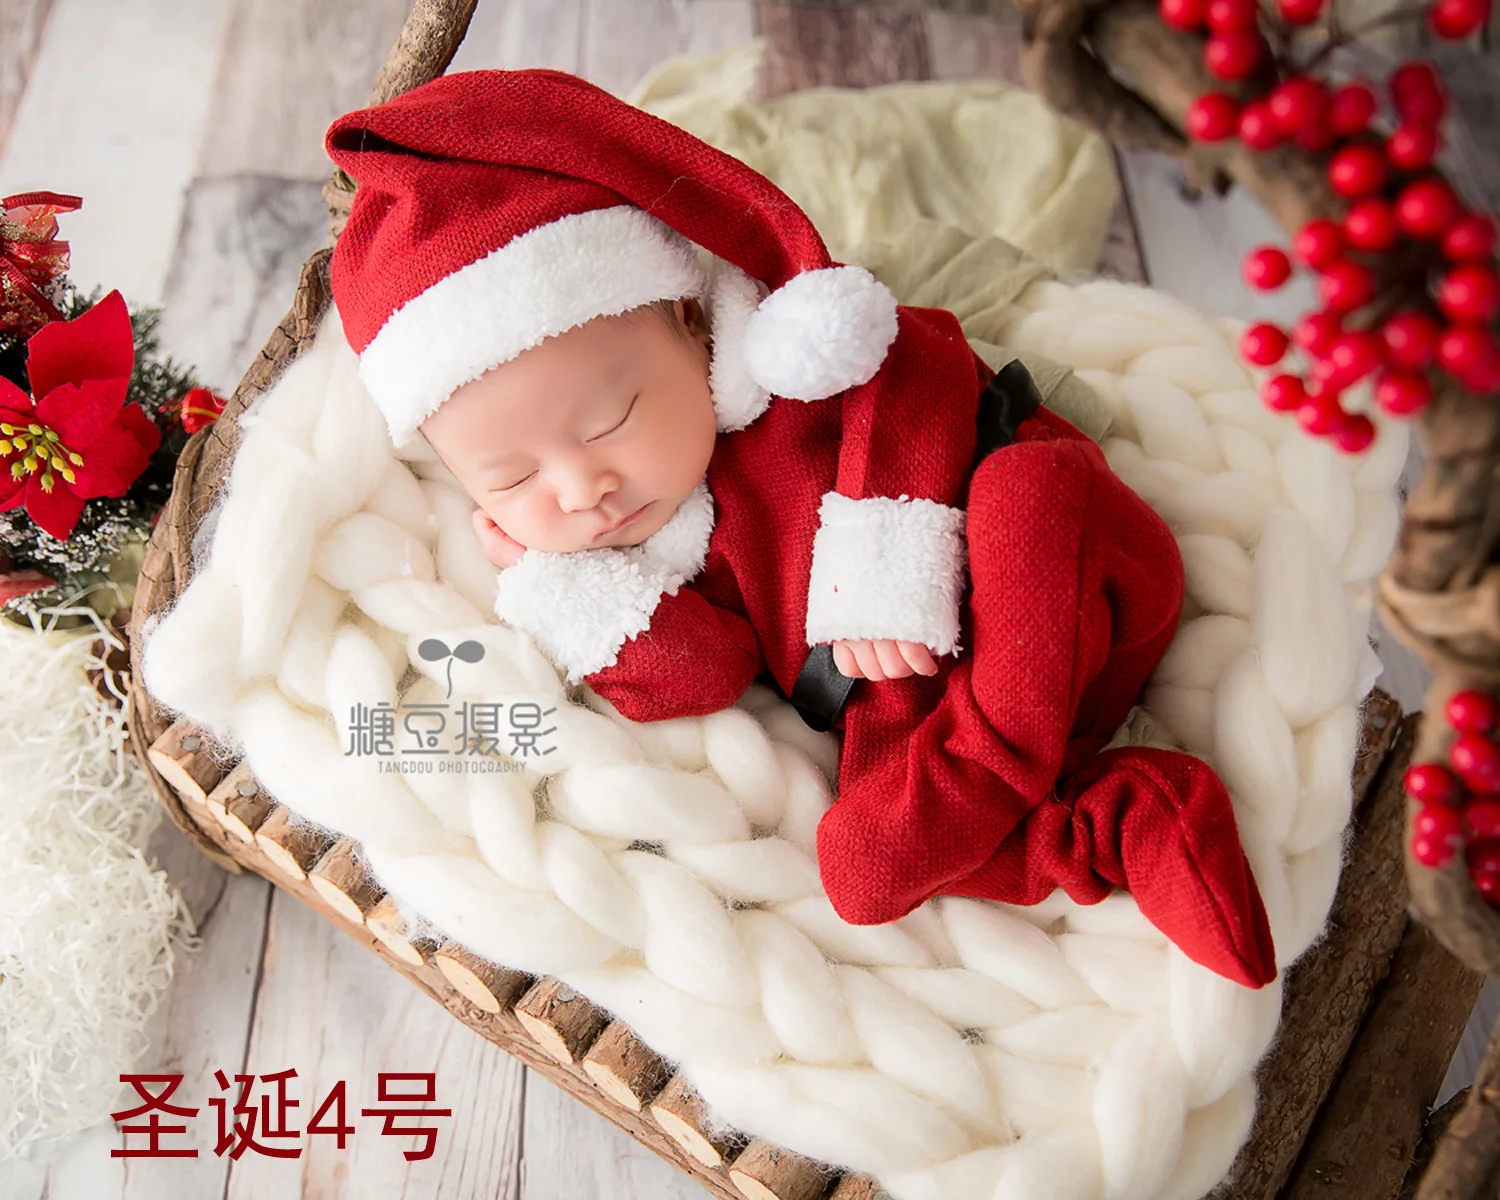 Реквизит для фотосессии новорожденный детский диван полнолуние Рождественский тематический детский фотокостюм новорожденный фотосессия реквизит